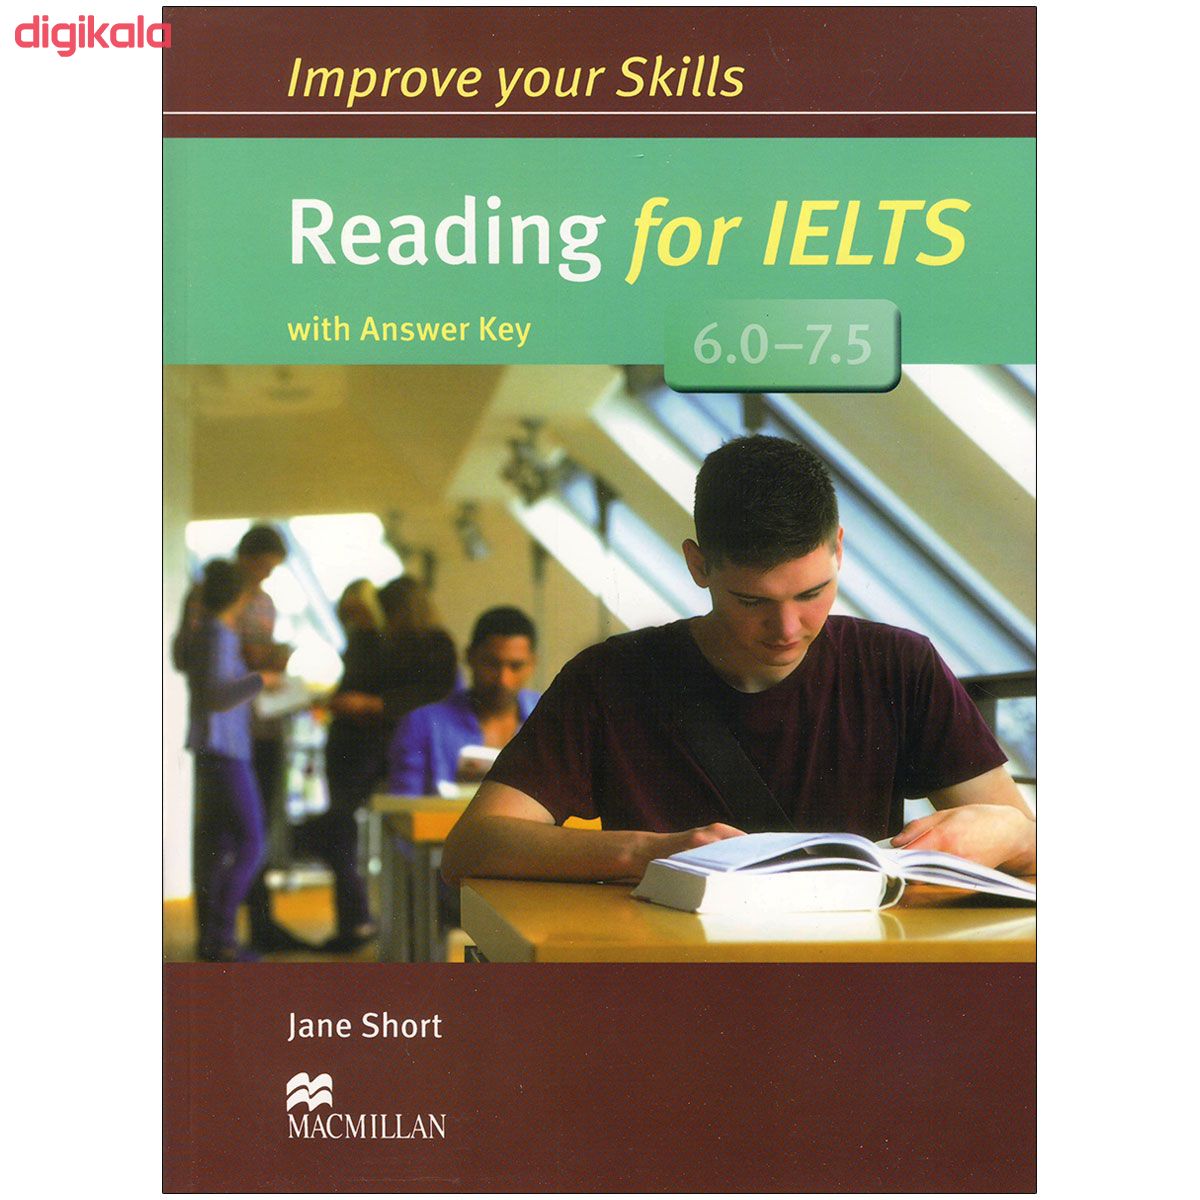  خرید اینترنتی با تخفیف ویژه کتاب Improve Your Skills Reading اثر جمعی از نویسندگان انتشارات مک میلان 2 جلدی